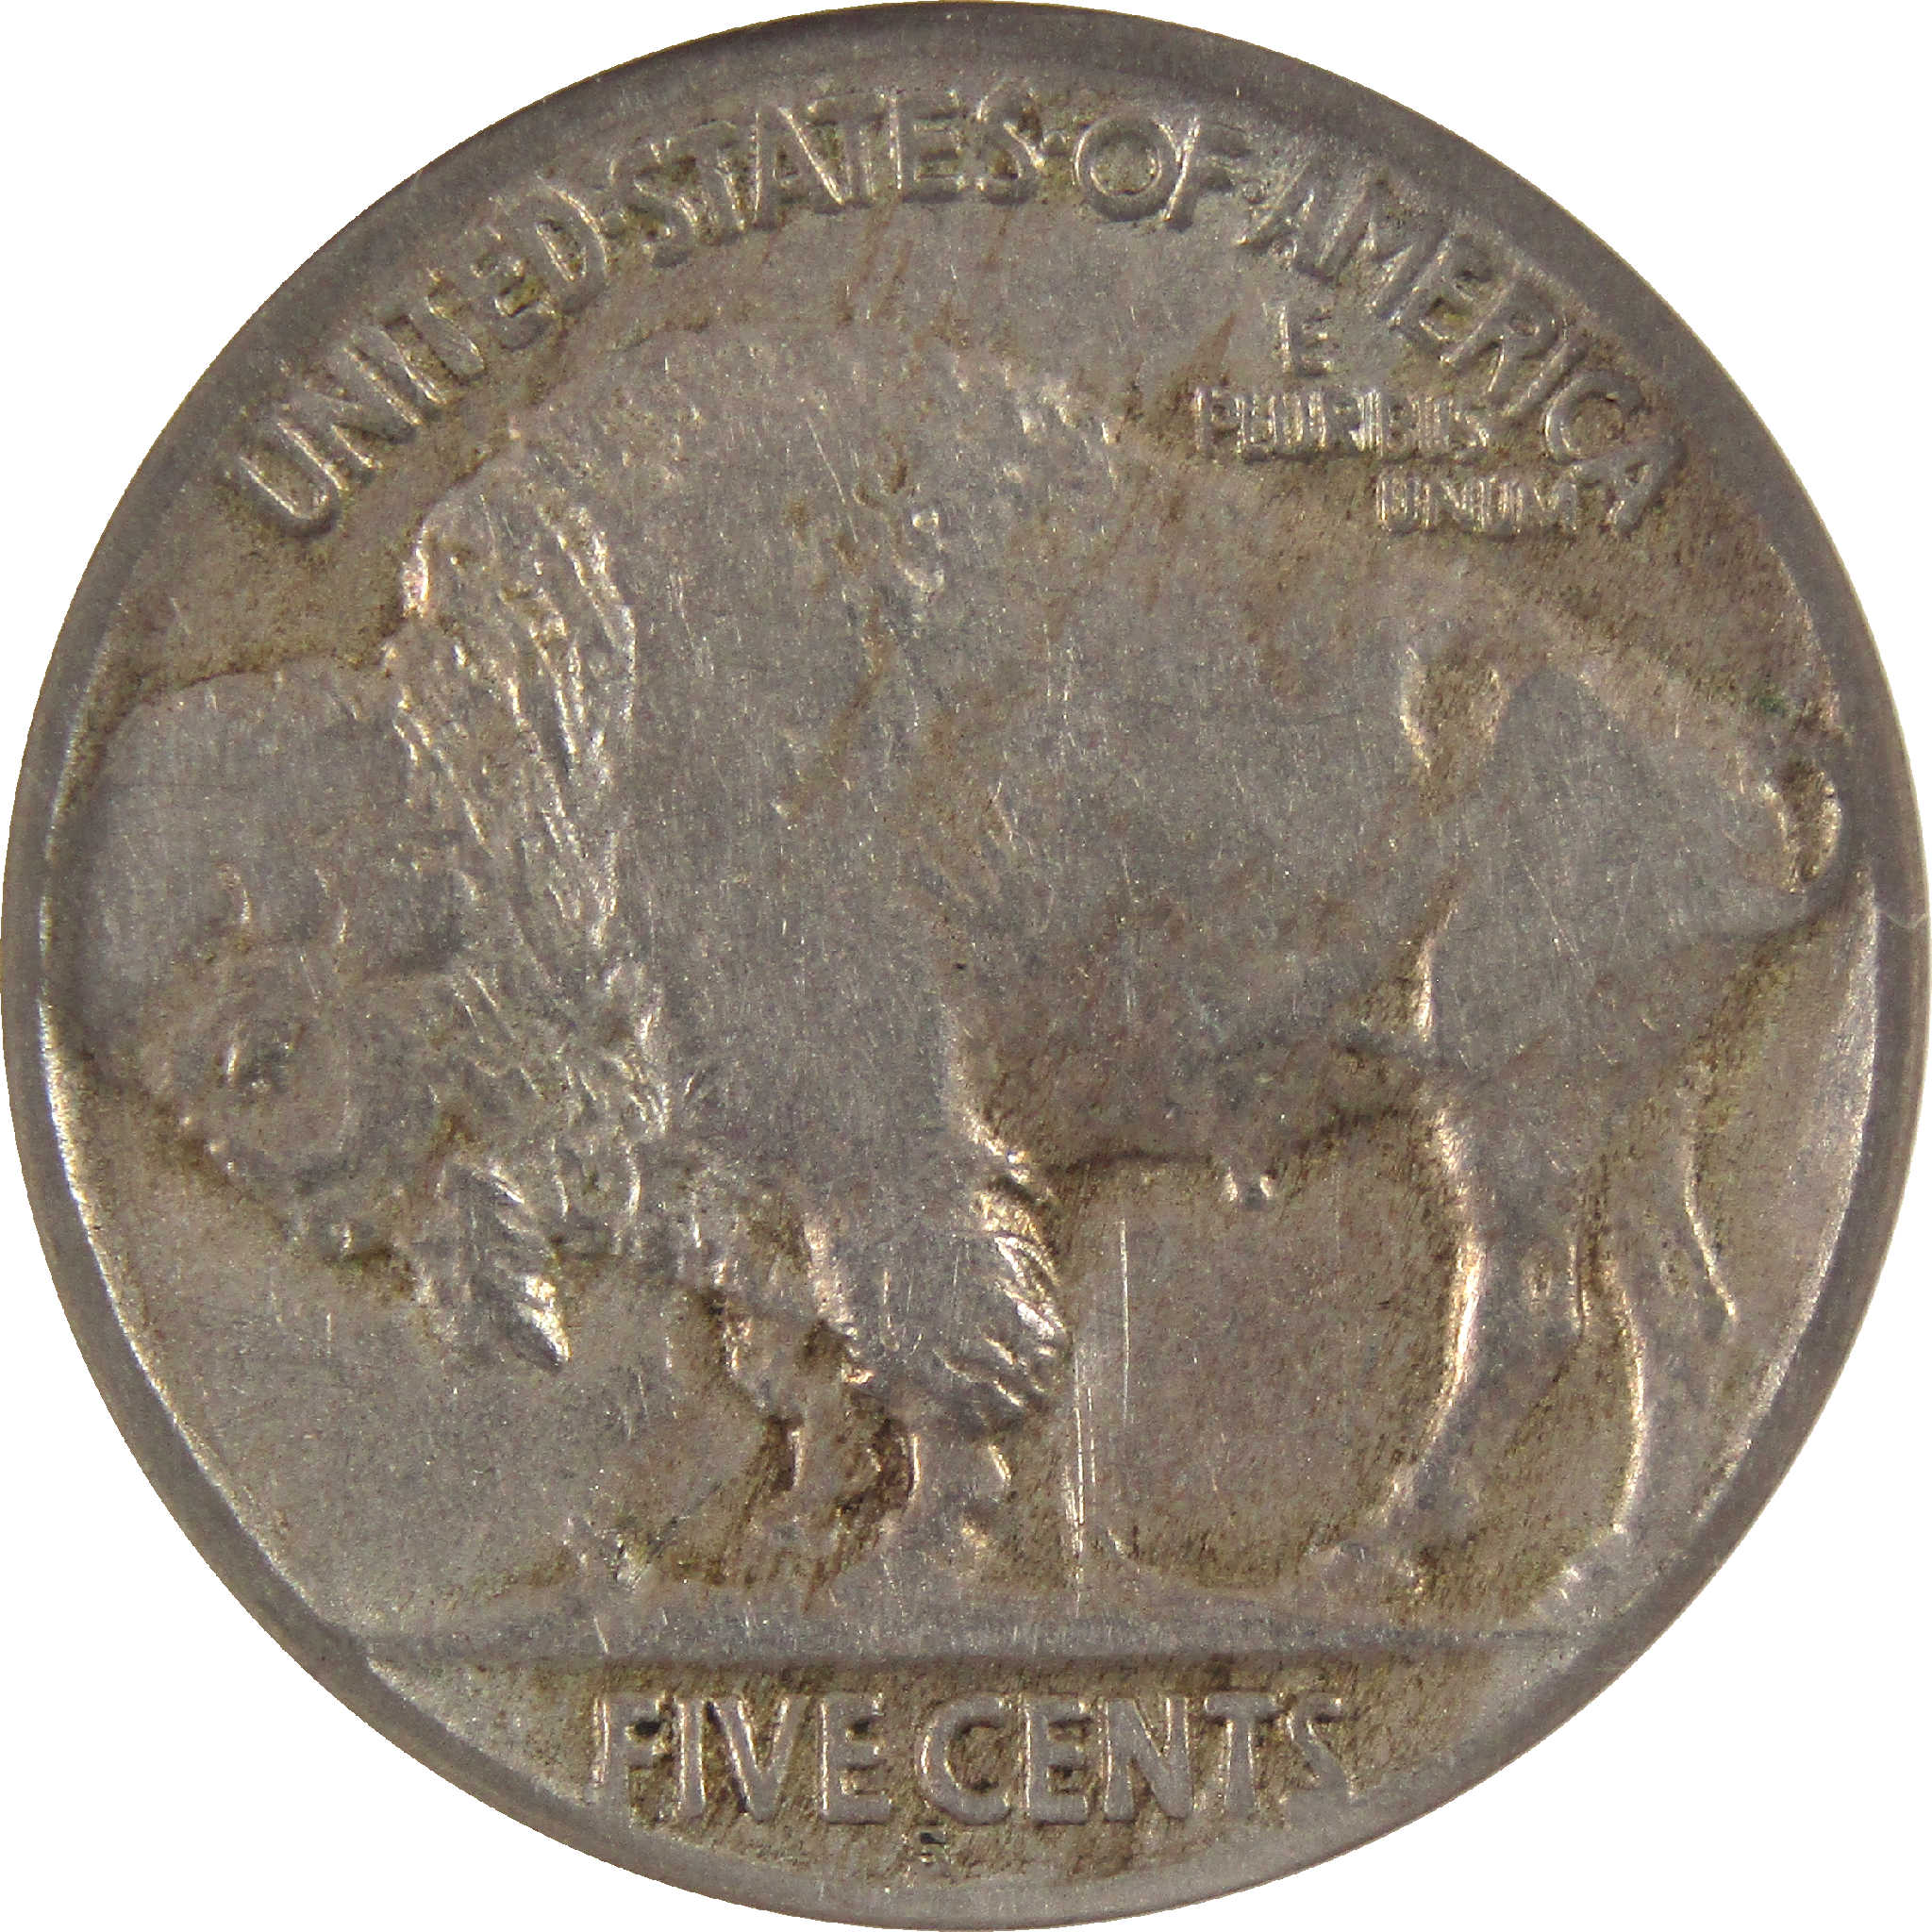 1921 S Indian Head Buffalo Nickel F 15 NGC 5c Coin SKU:I11545